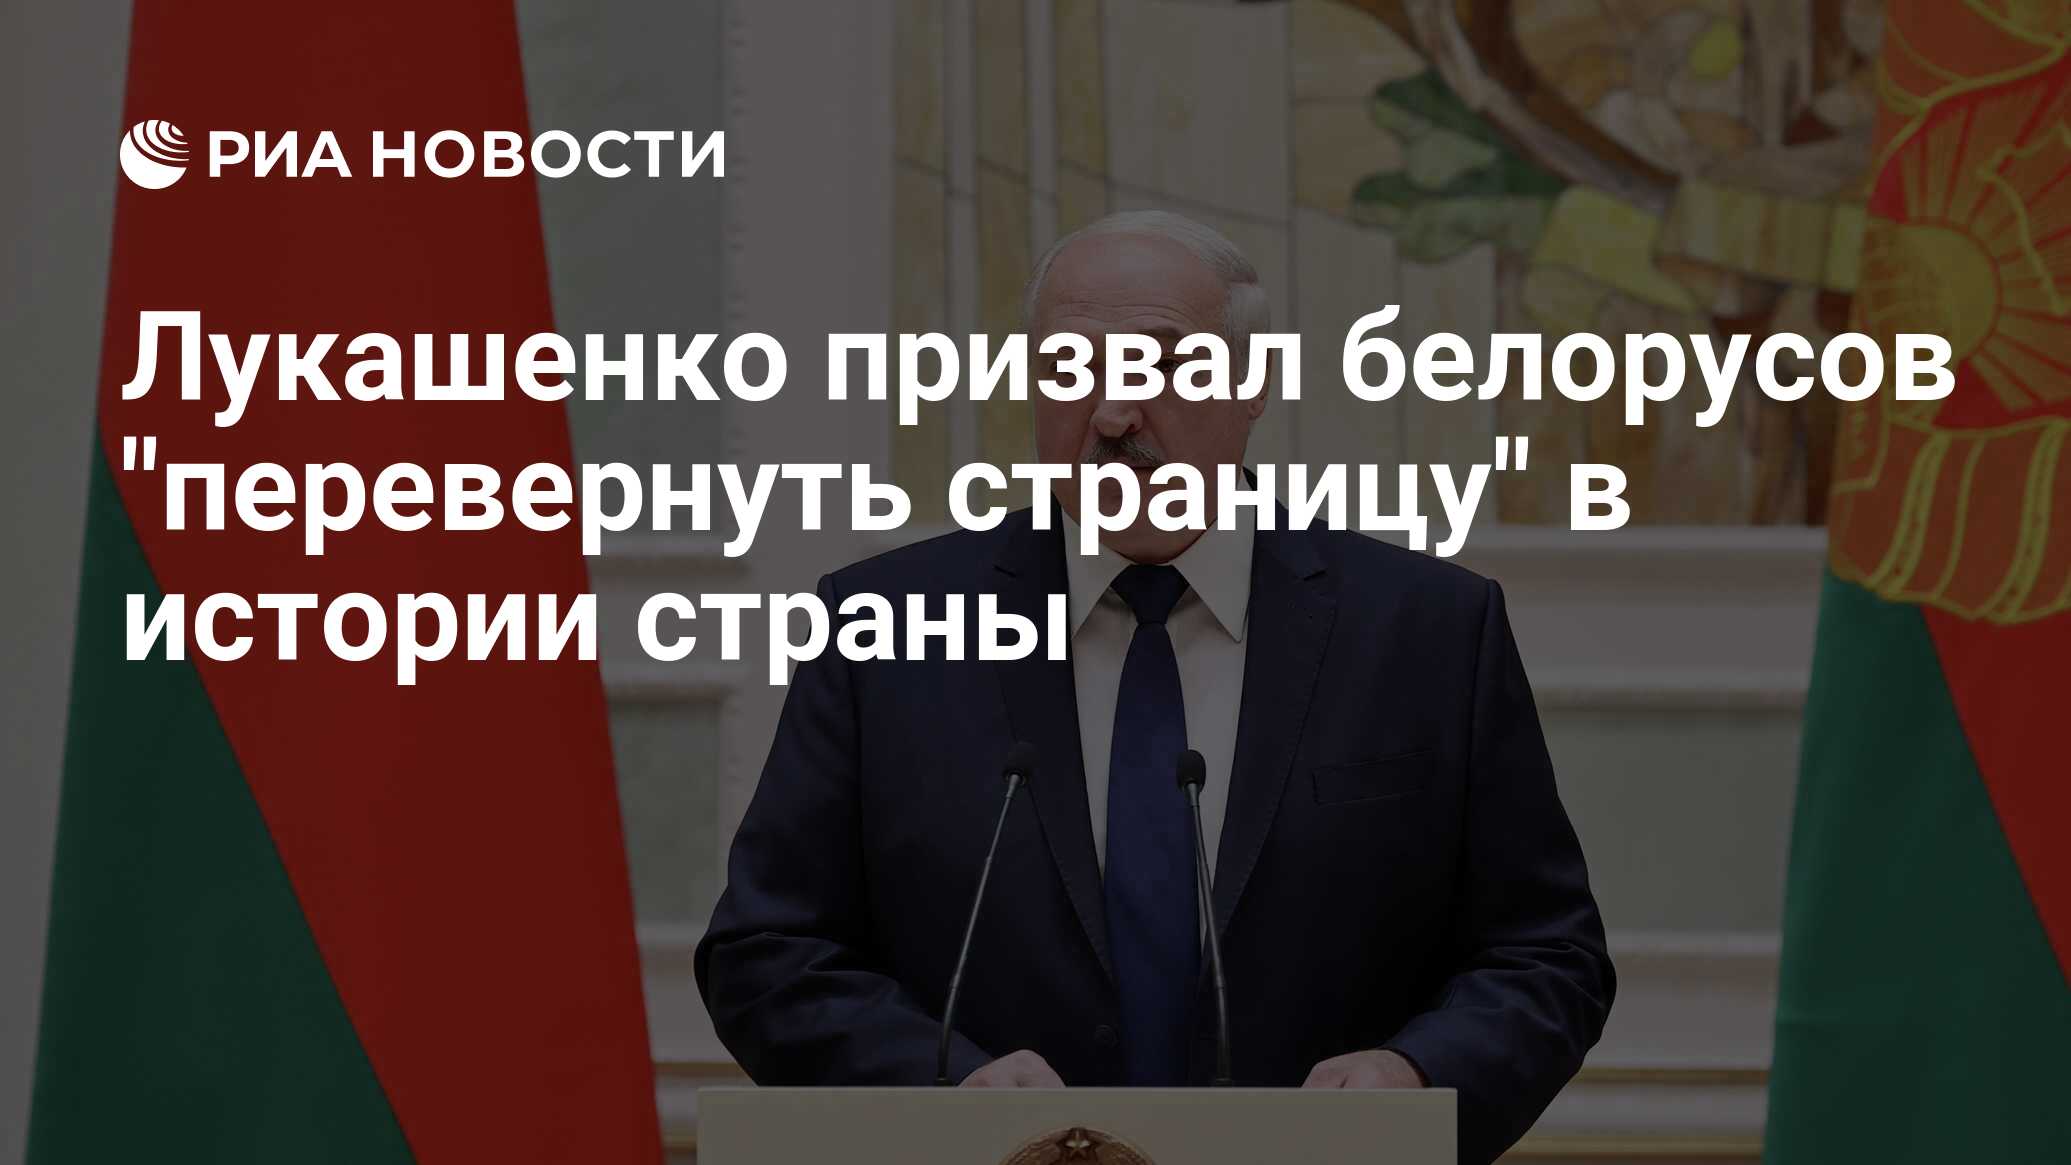 Лукашенко призвал белорусов «перевернуть страницу» в истории страны